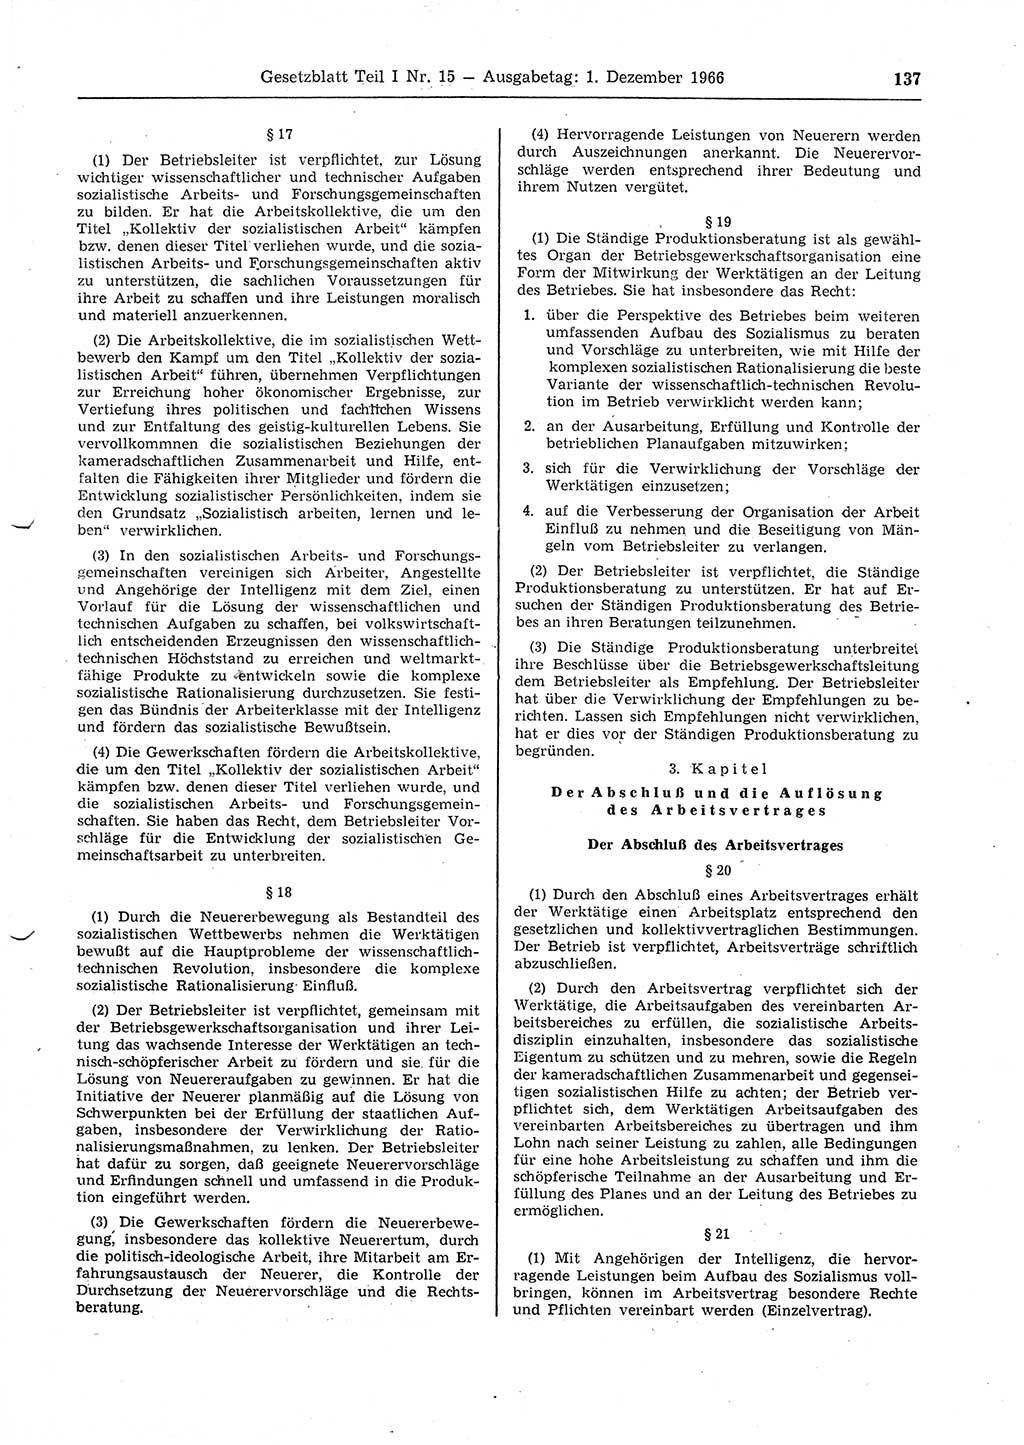 Gesetzblatt (GBl.) der Deutschen Demokratischen Republik (DDR) Teil Ⅰ 1966, Seite 137 (GBl. DDR Ⅰ 1966, S. 137)